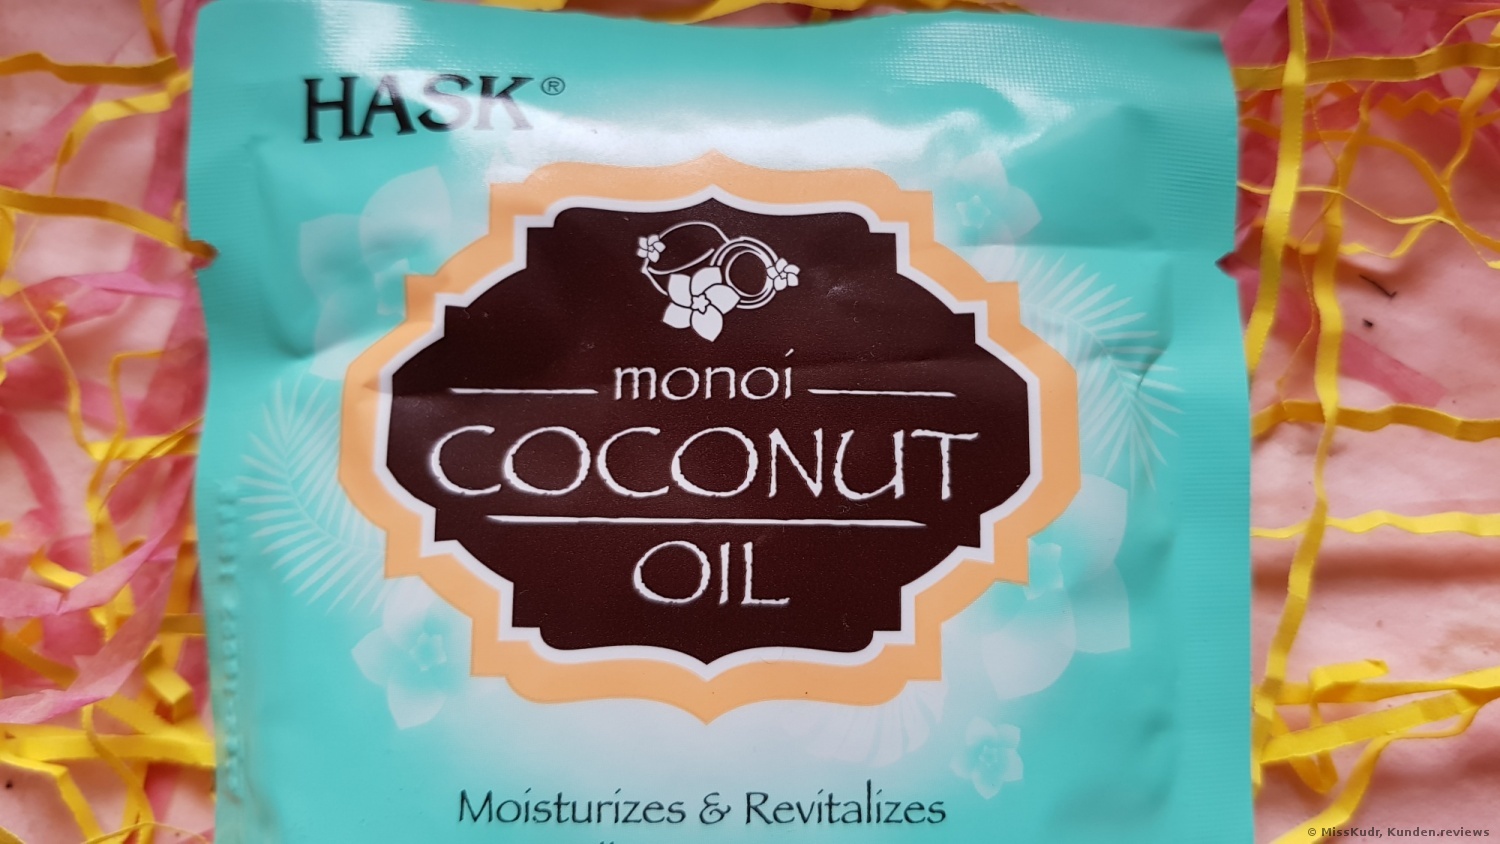 HASK Kursachet Coconut Monoi-Oil